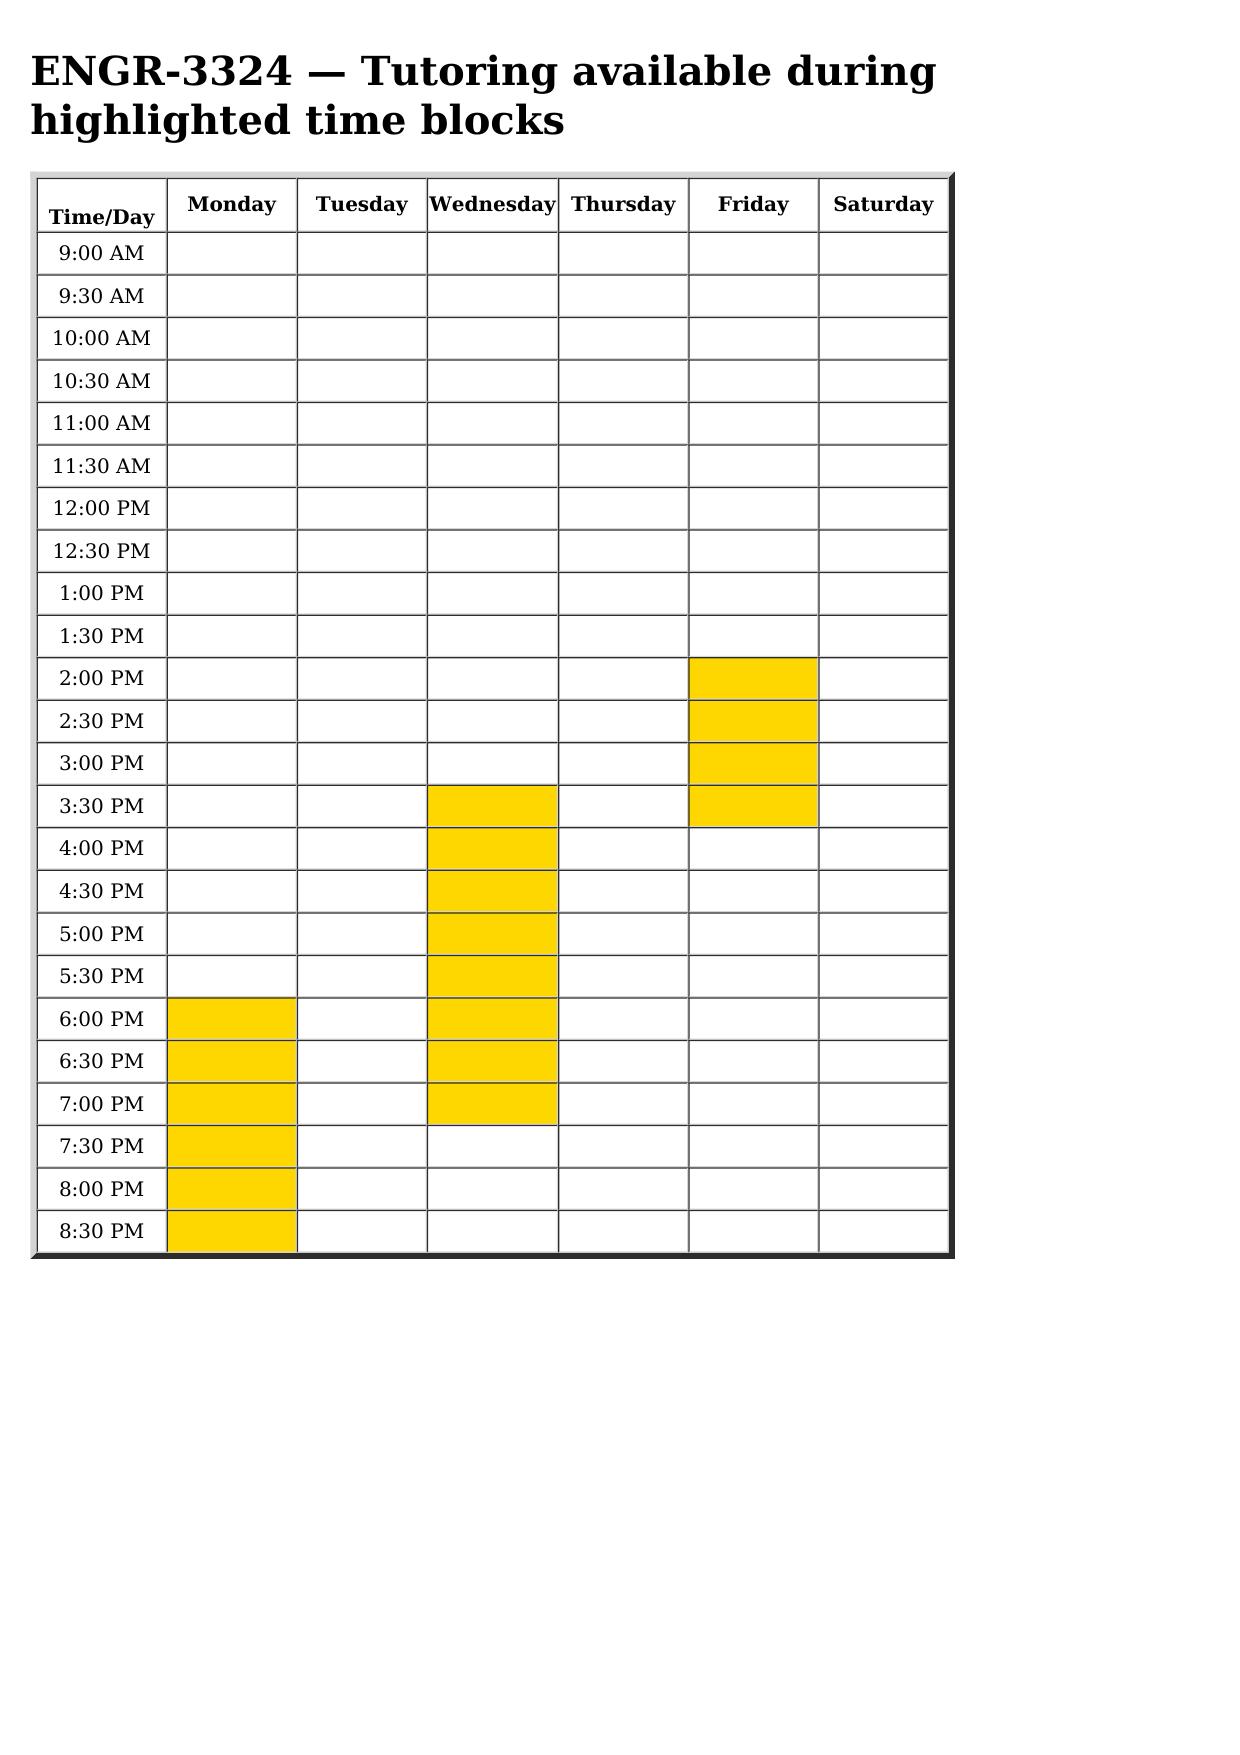 engr 3324 schedule